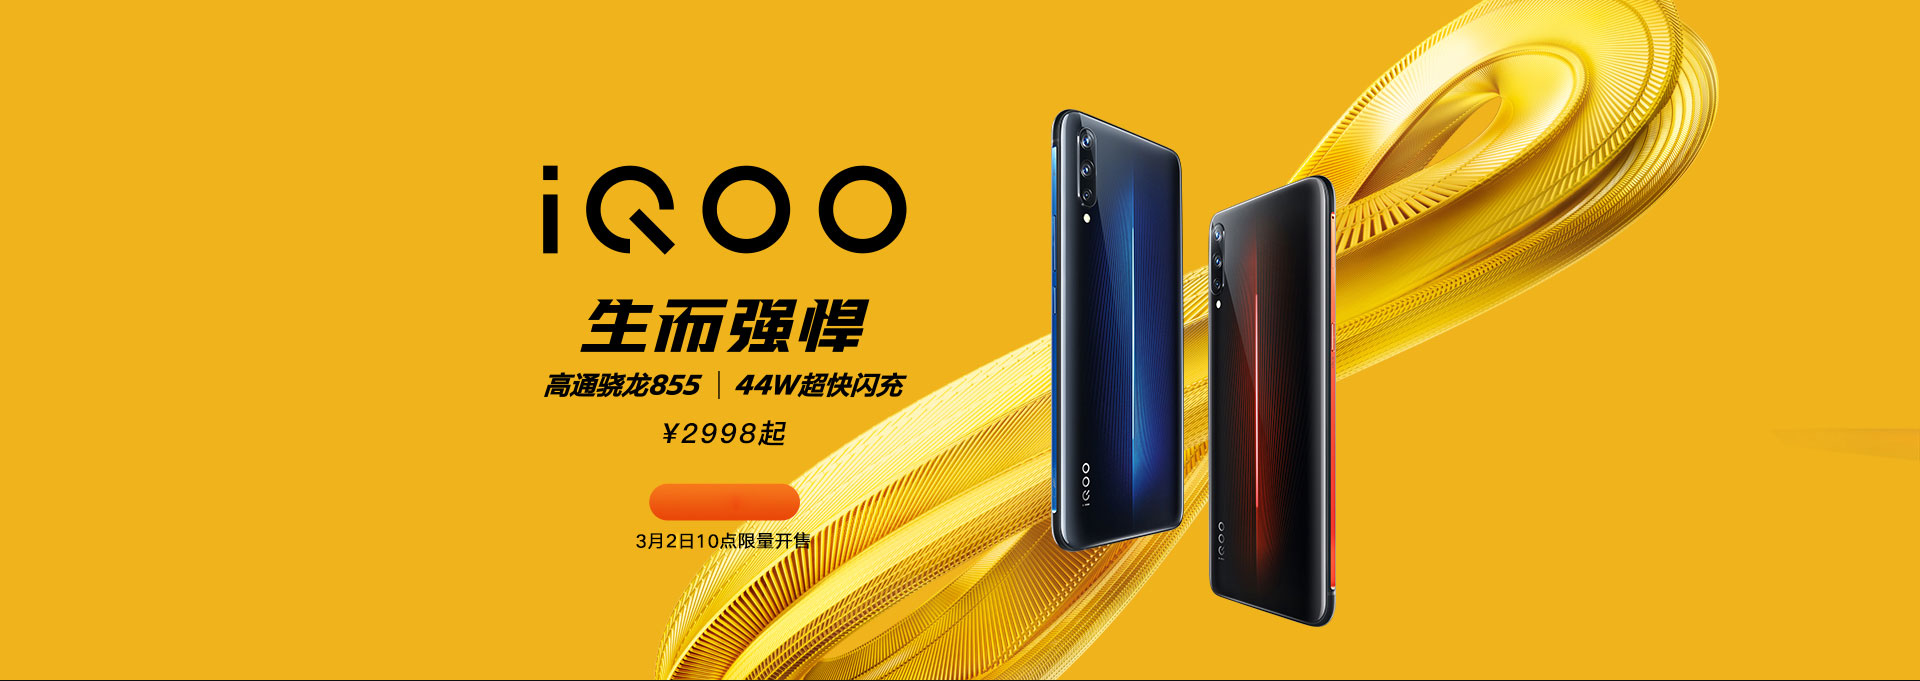 Vivo iQOO chính thức: Snapdragon 855, RAM 12GB, tản nhiệt buồng hơi, giá từ 450 USD